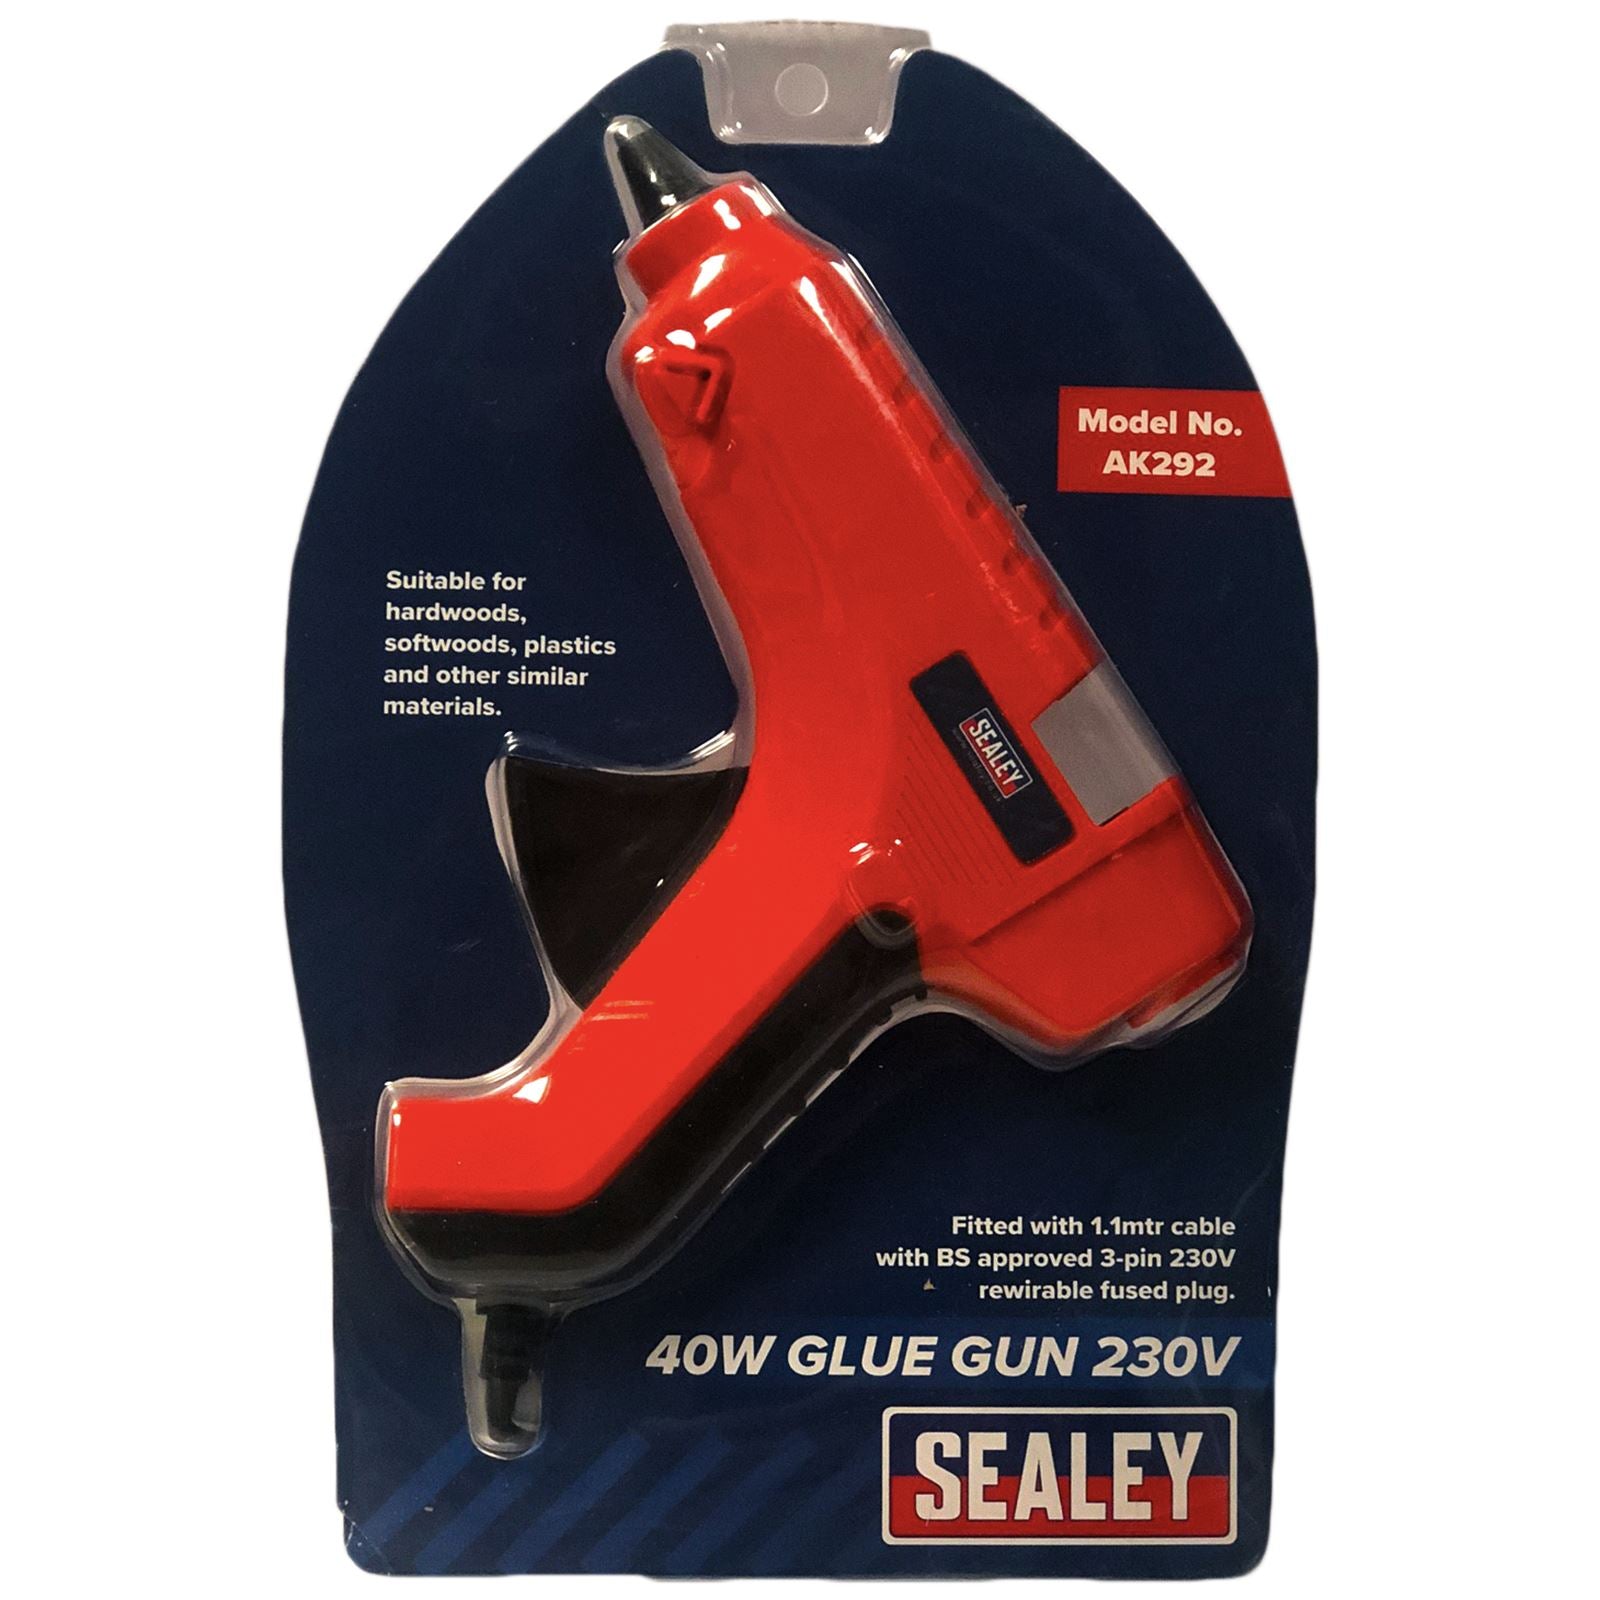 Sealey 40W Glue Gun 230V Hobby Craft Mini Work Trigger Feed Control